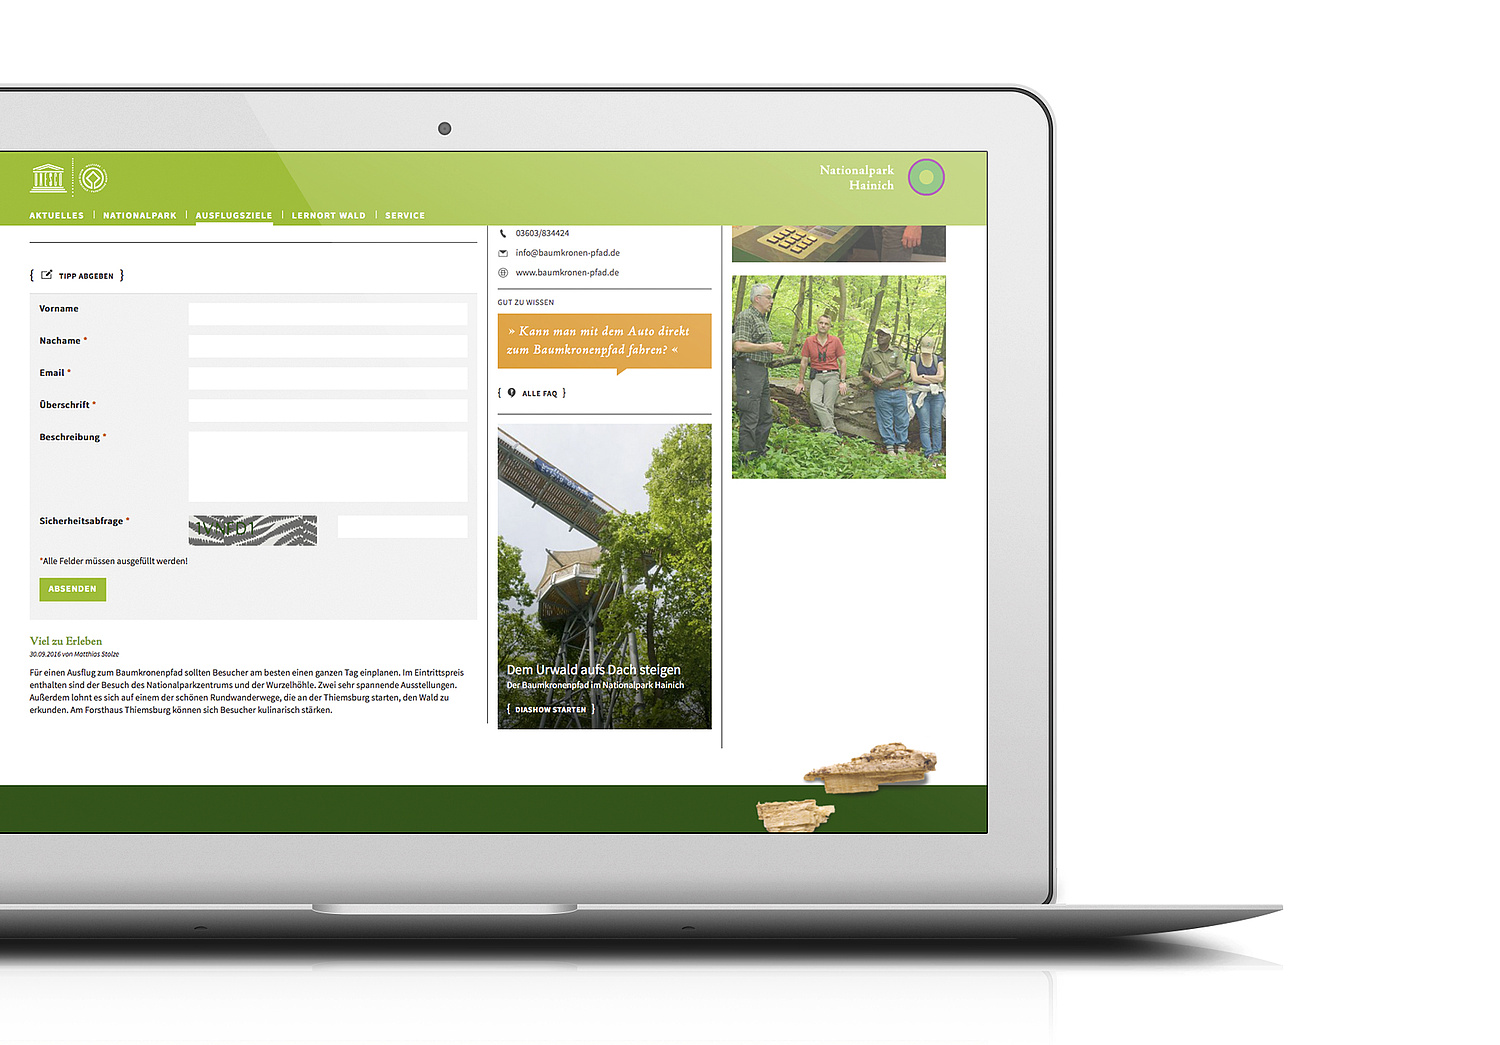 Desktopansicht der Website zum Nationalpark Hainich mit dem Formular für das Abgeben von Insidertipps (© Papenfuss | Atelier)